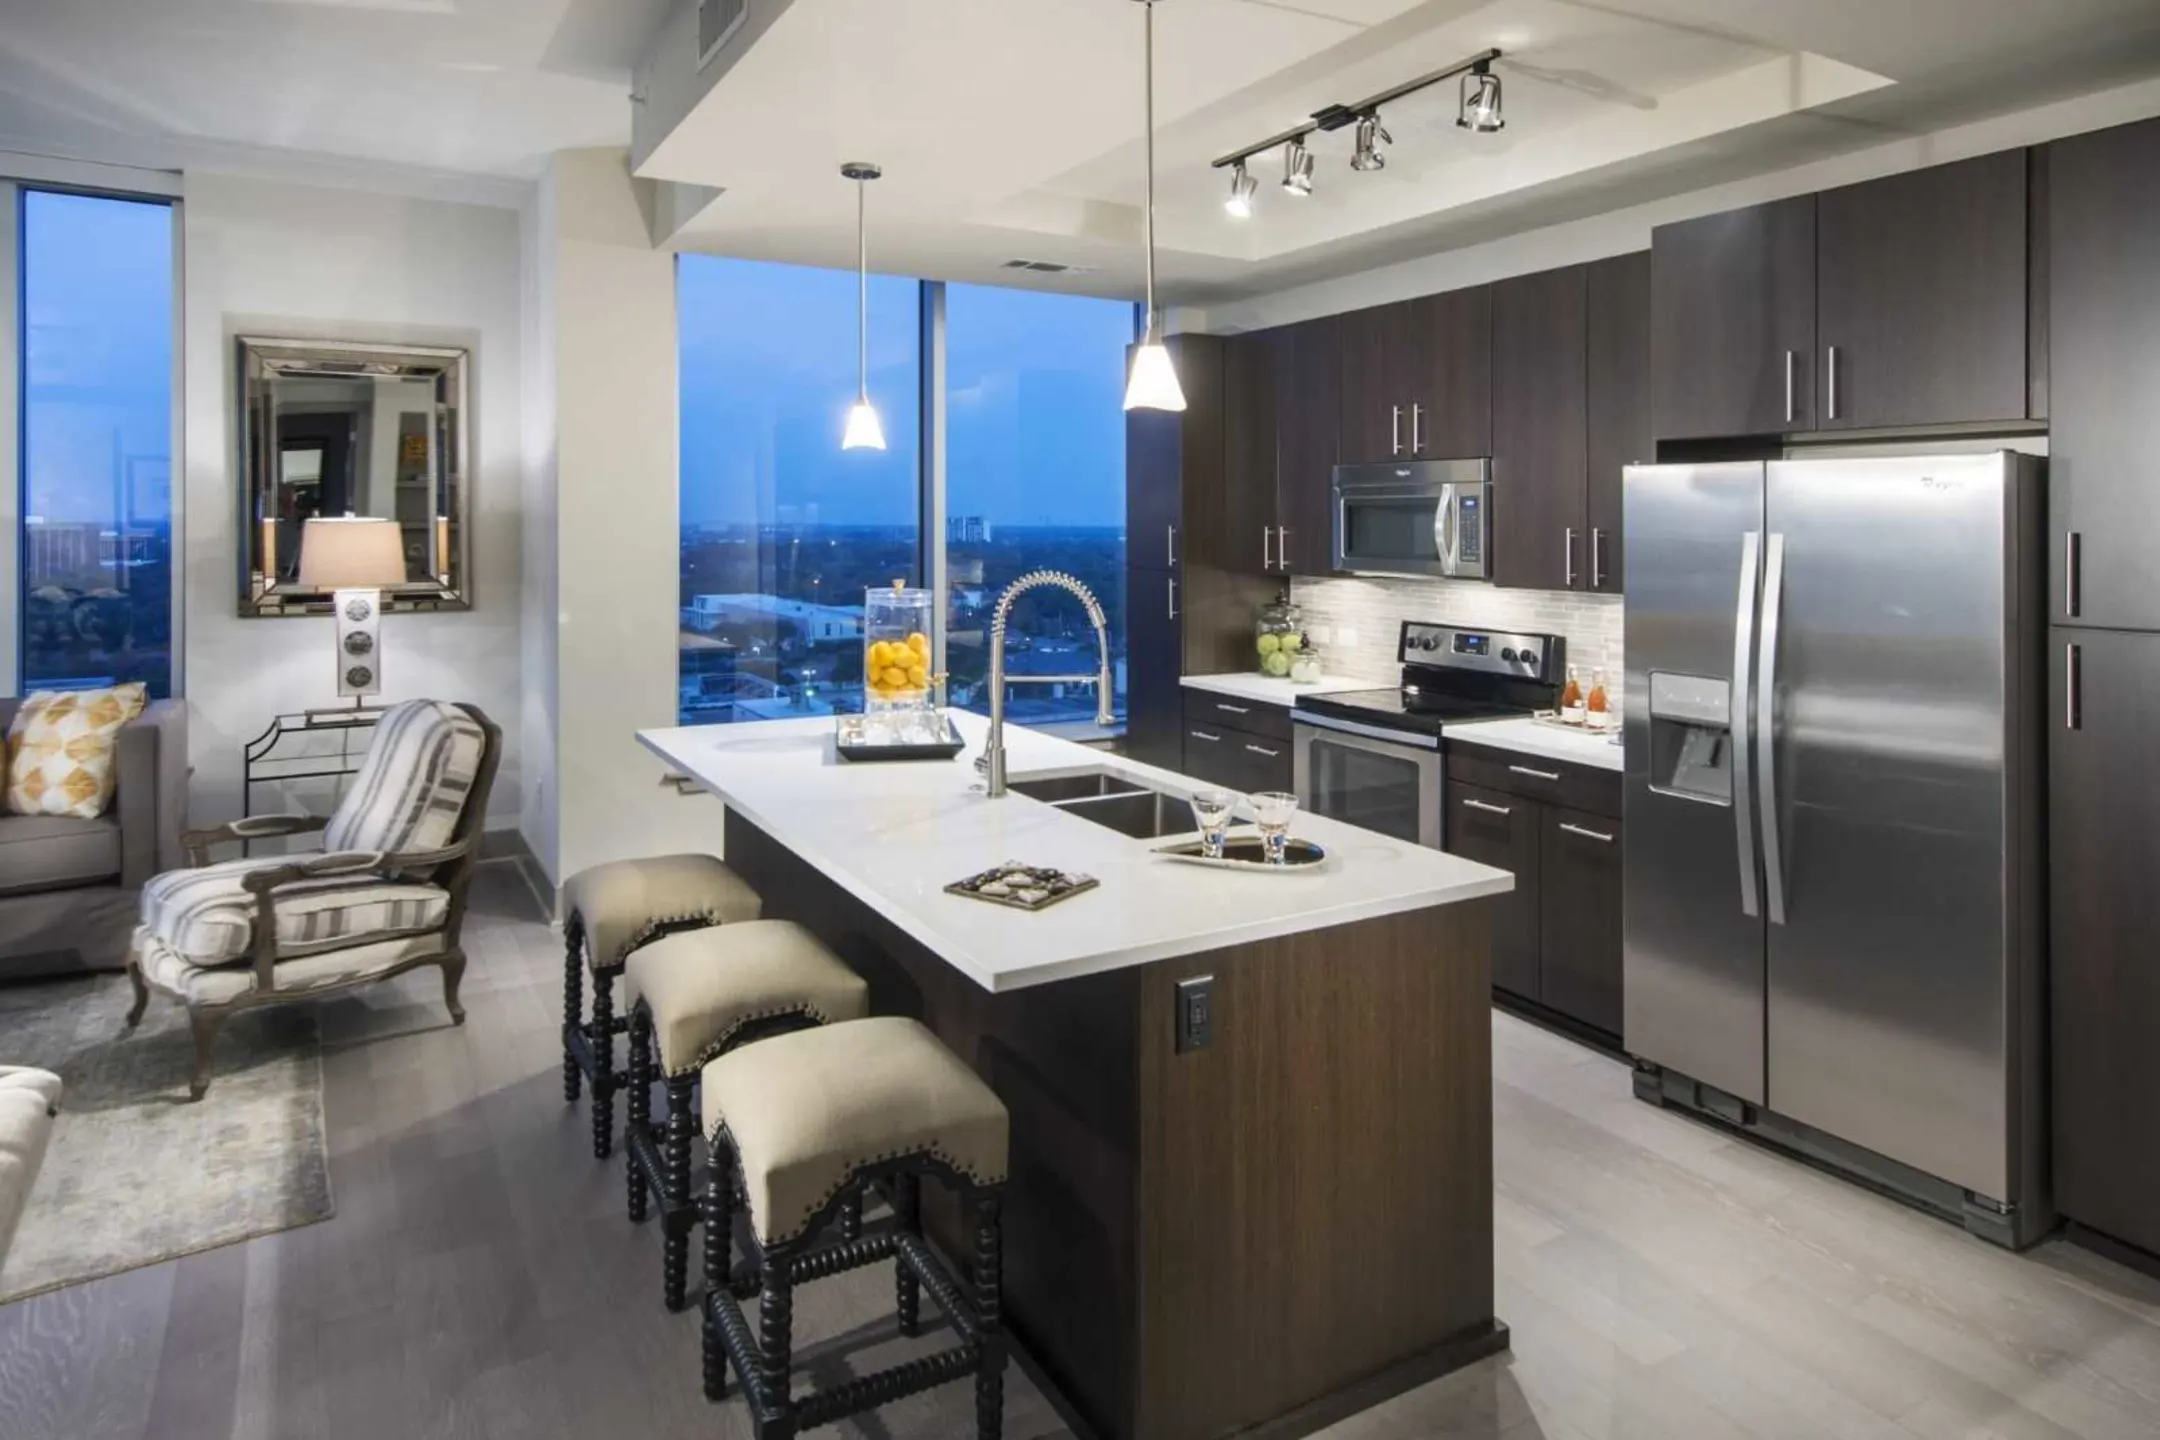 Kitchen - 77056 Luxury Apartments - Houston, TX